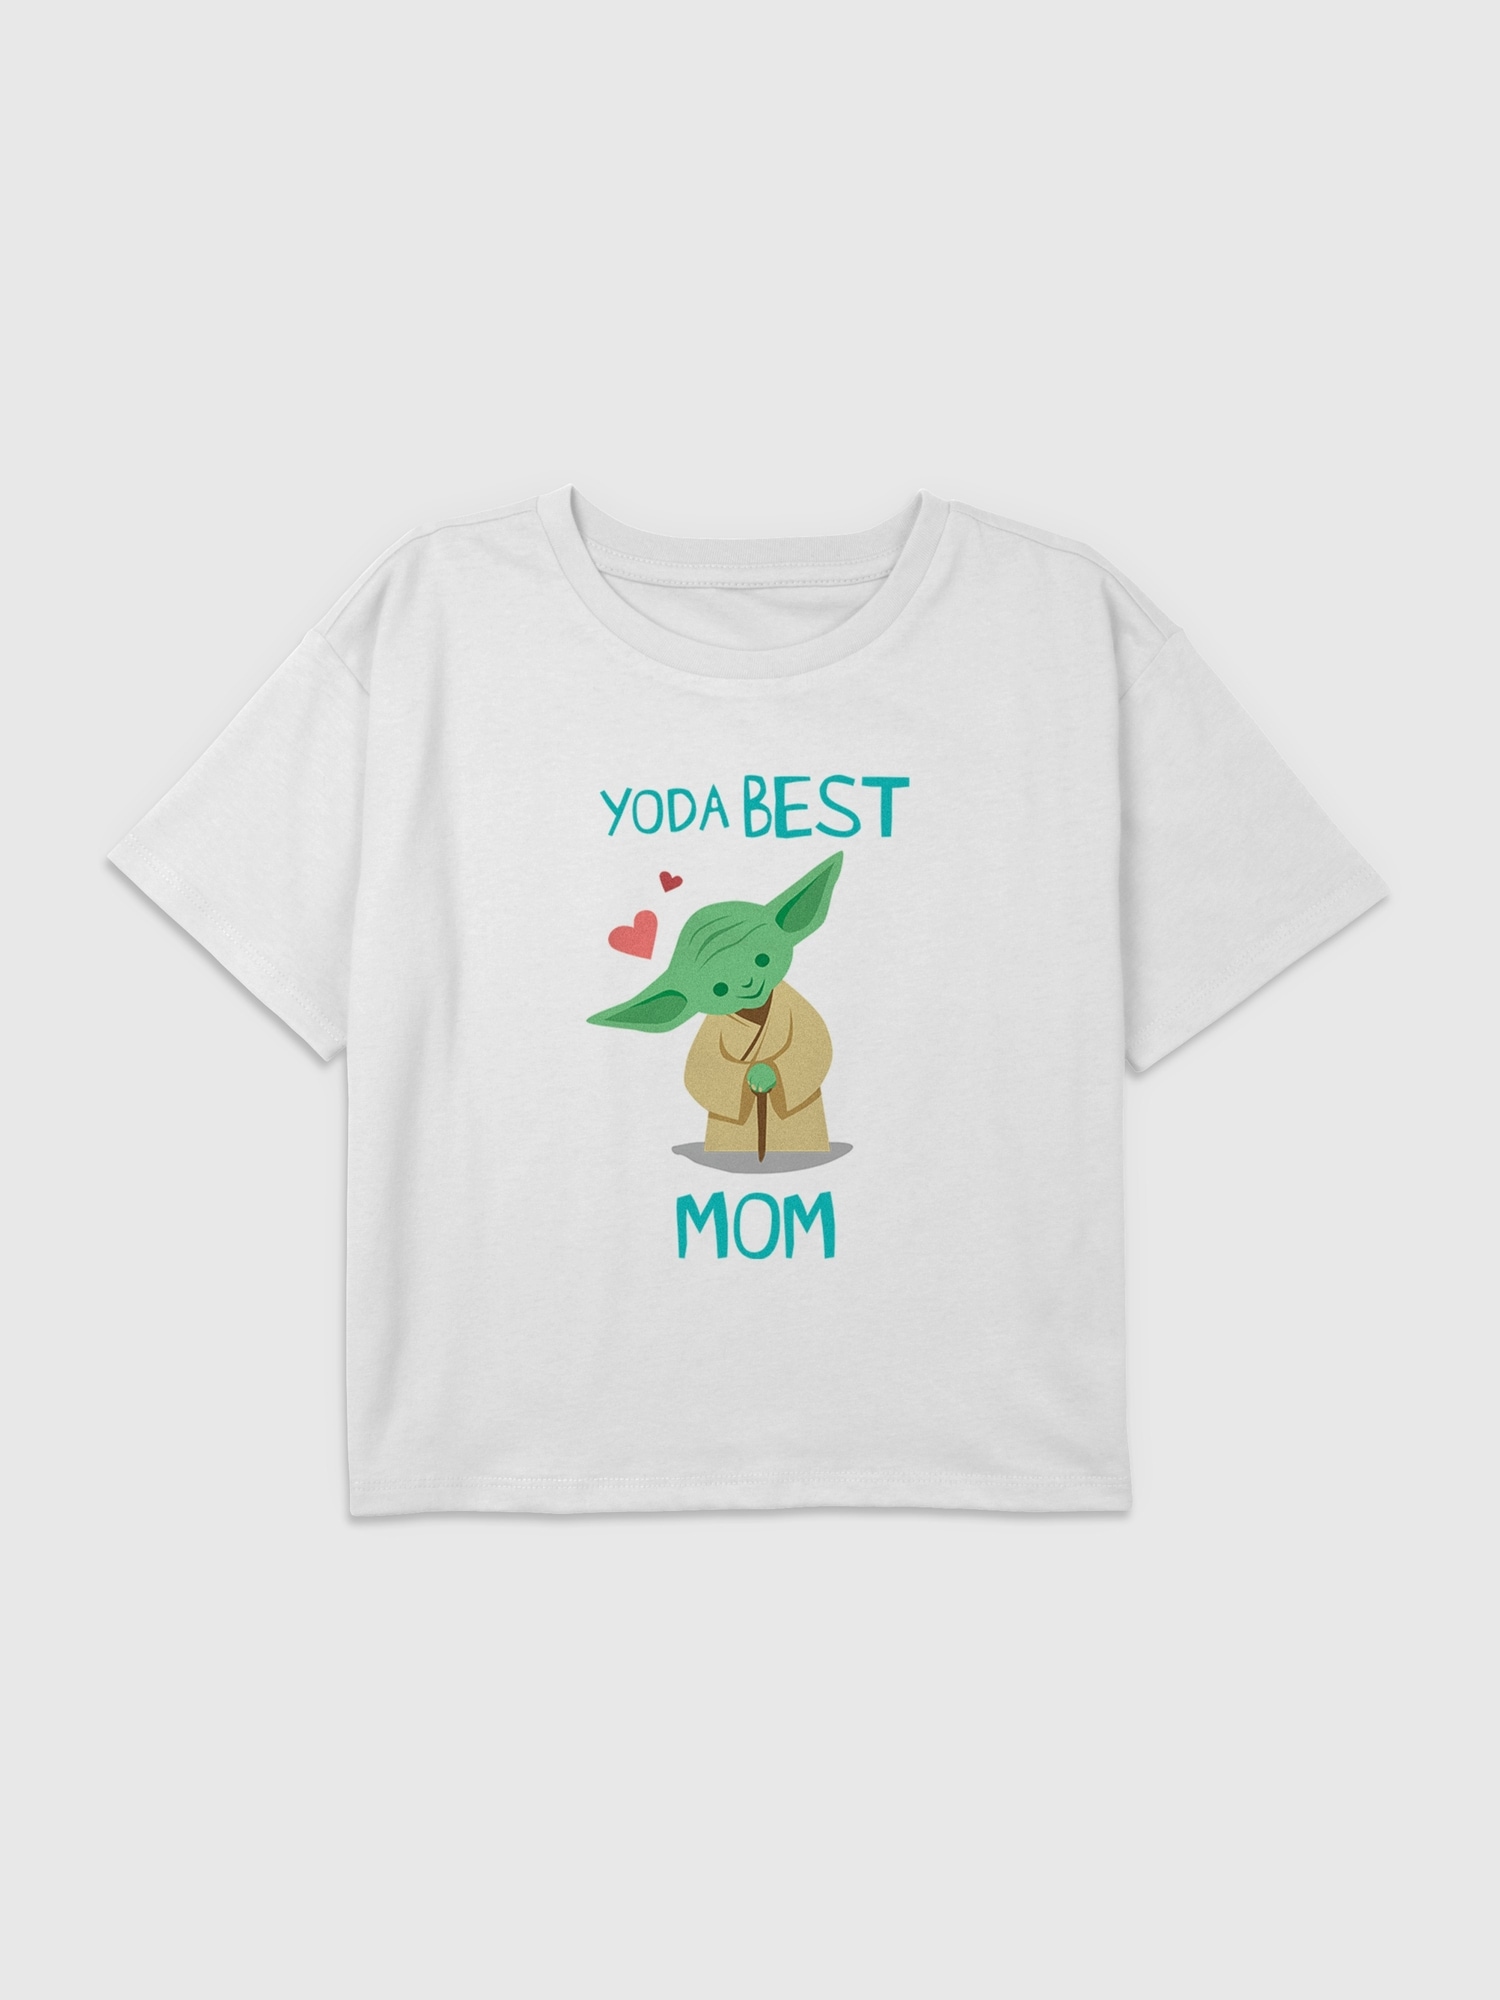 Kids Star Wars Yoda Best Mom Graphic Boxy Crop Tee